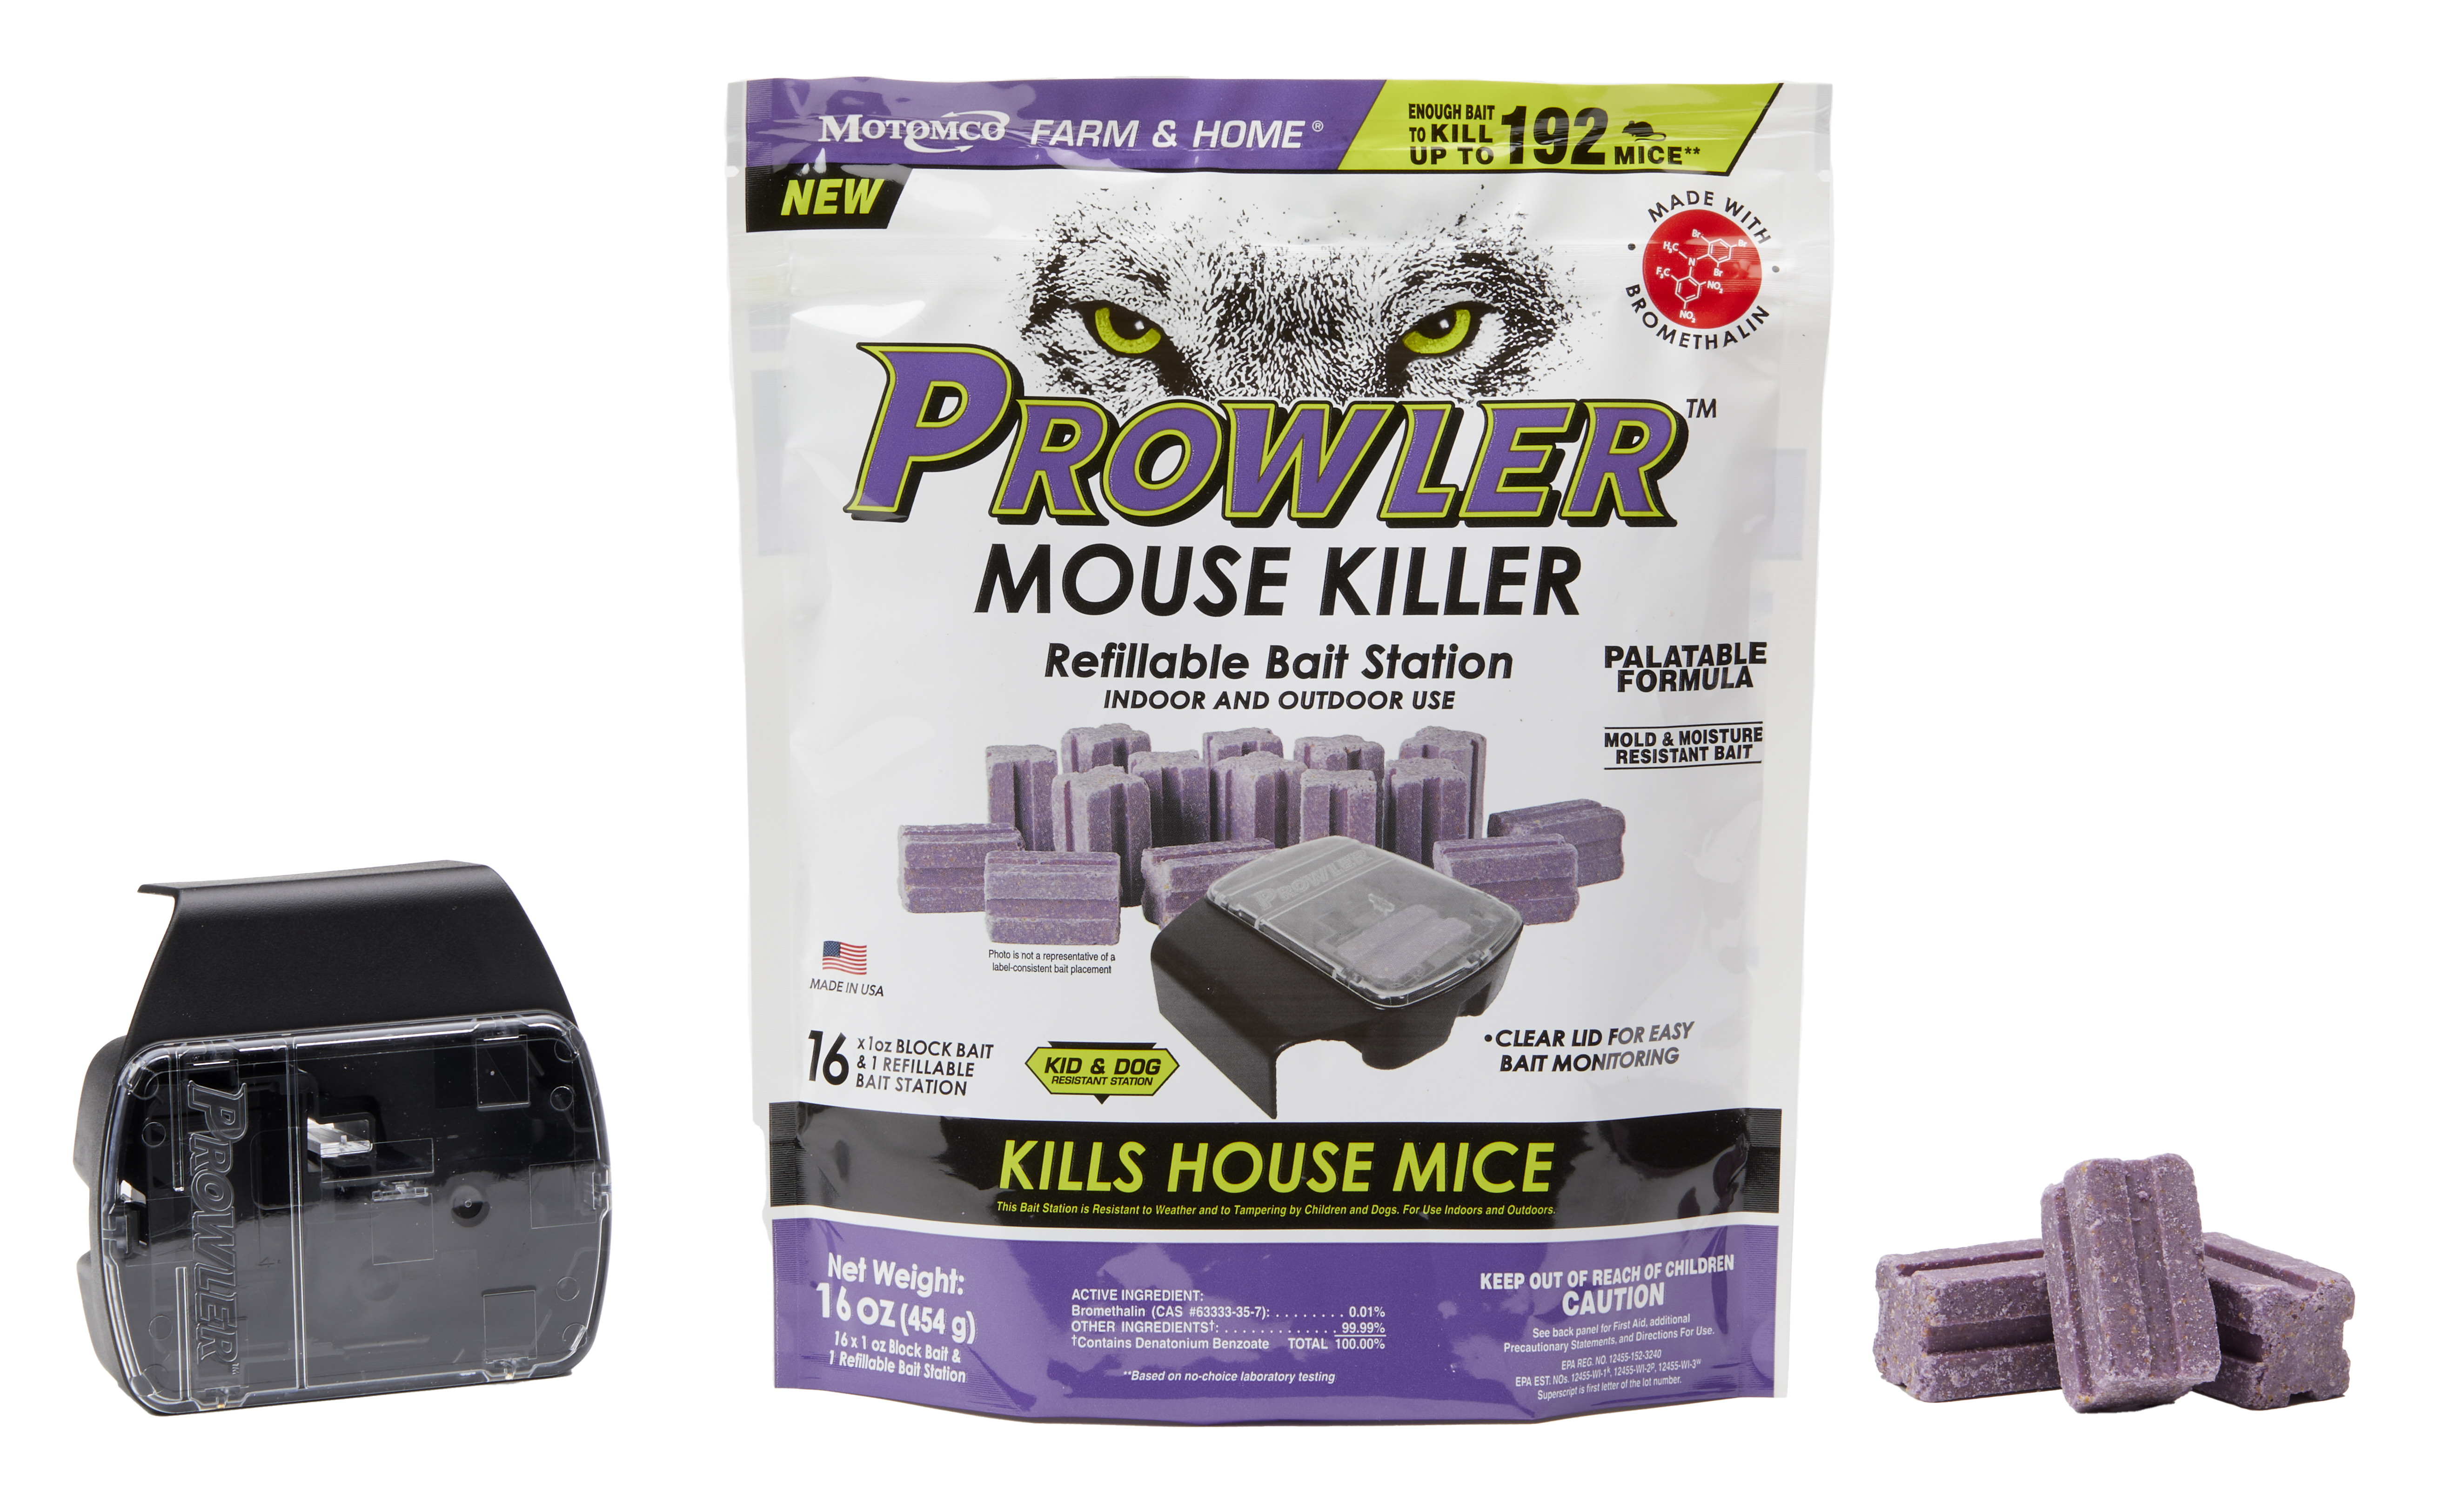 Reusable Mouse Trap - Motomco